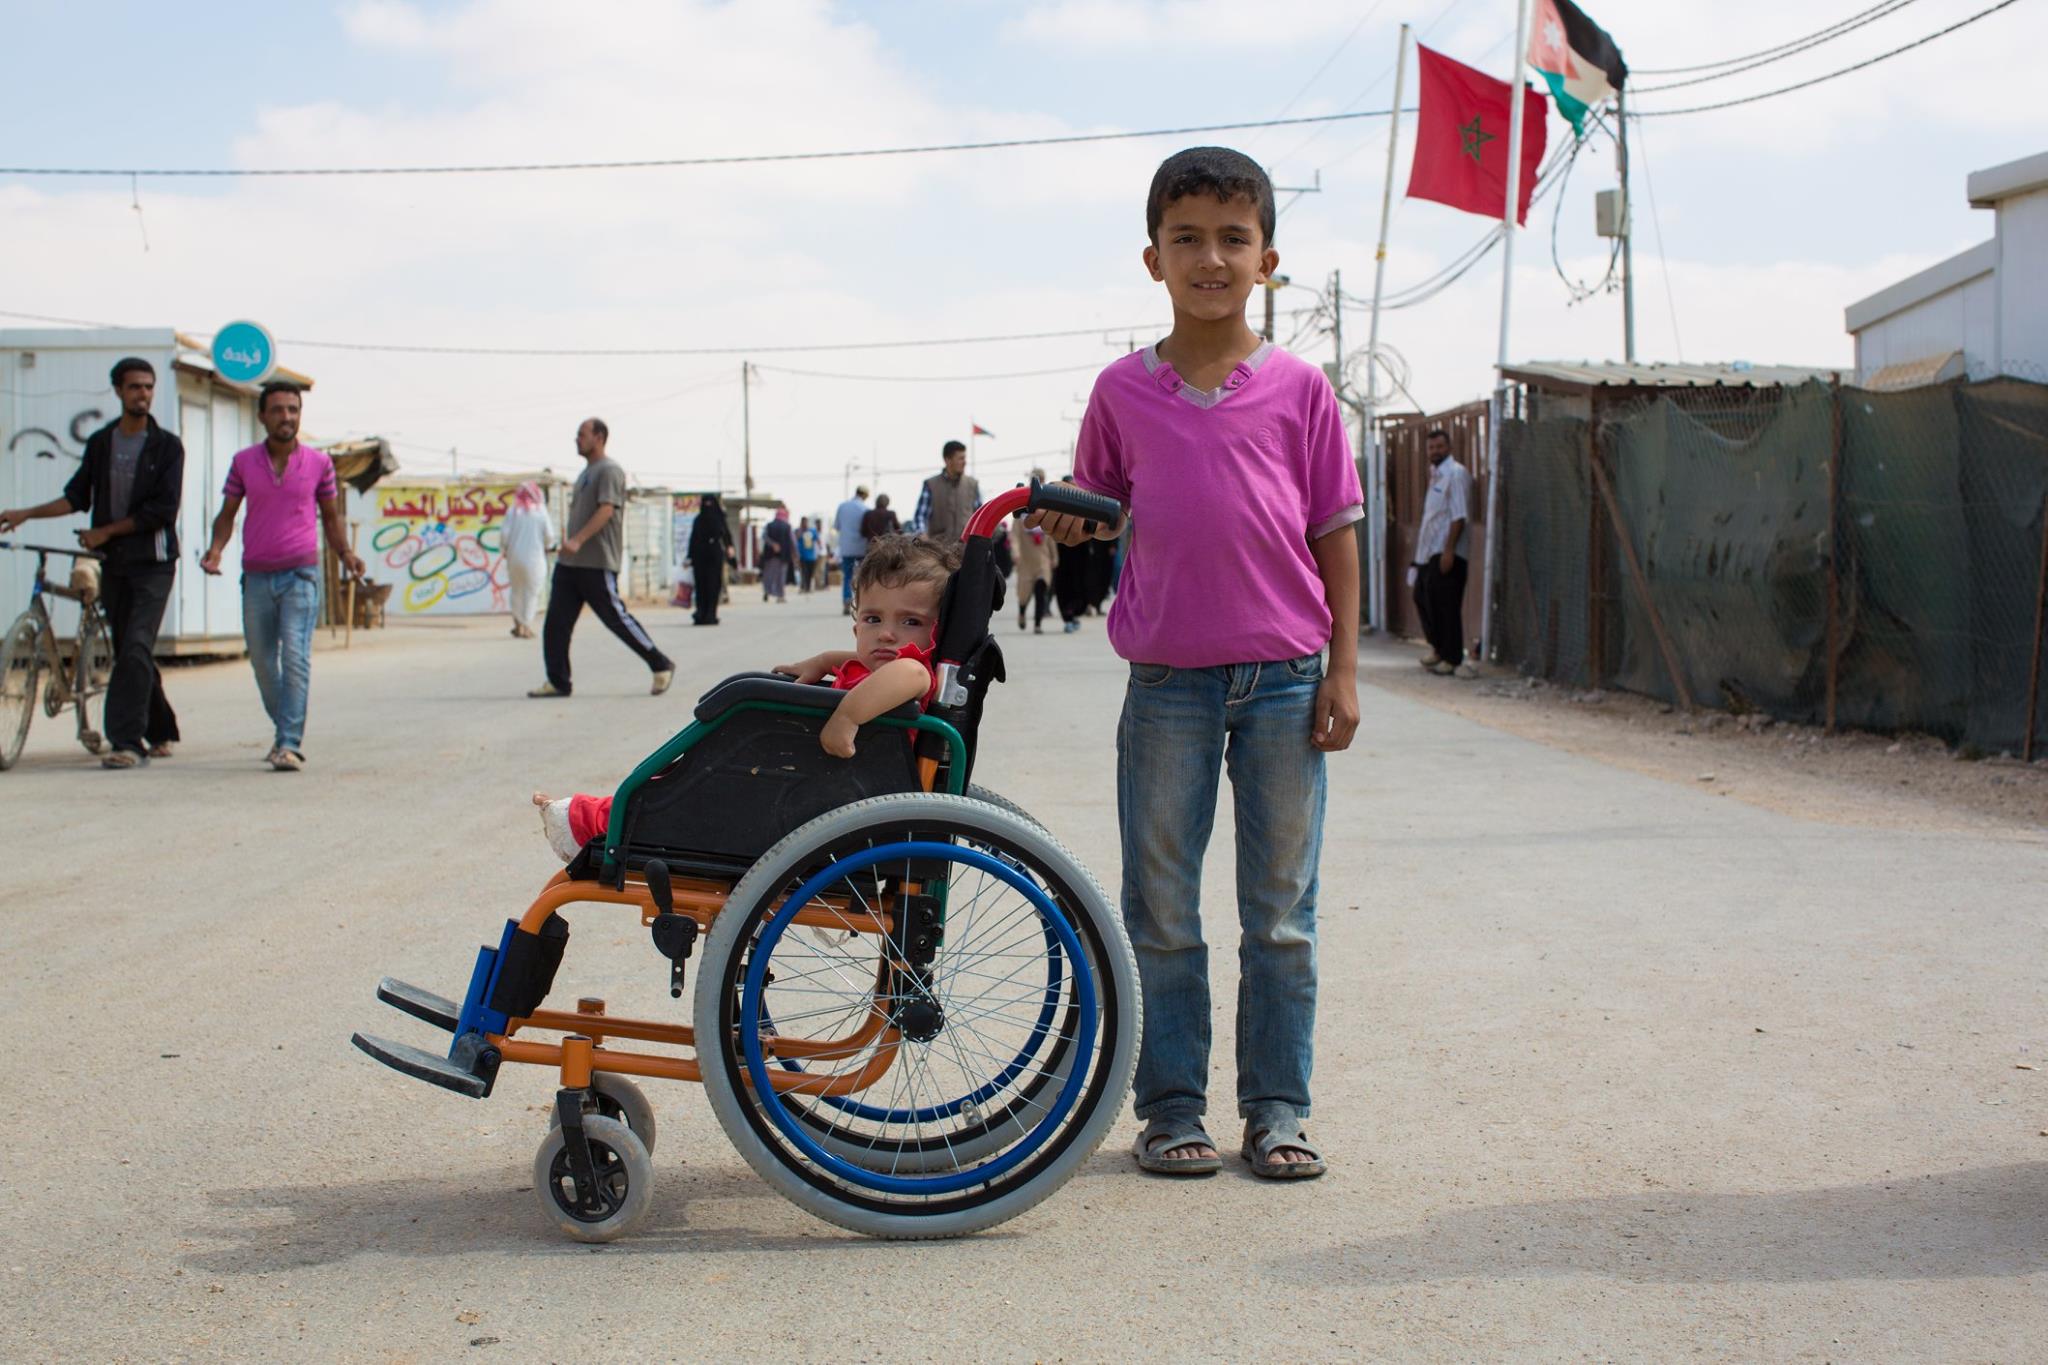 Zaatari Refugee Camp, Jordan